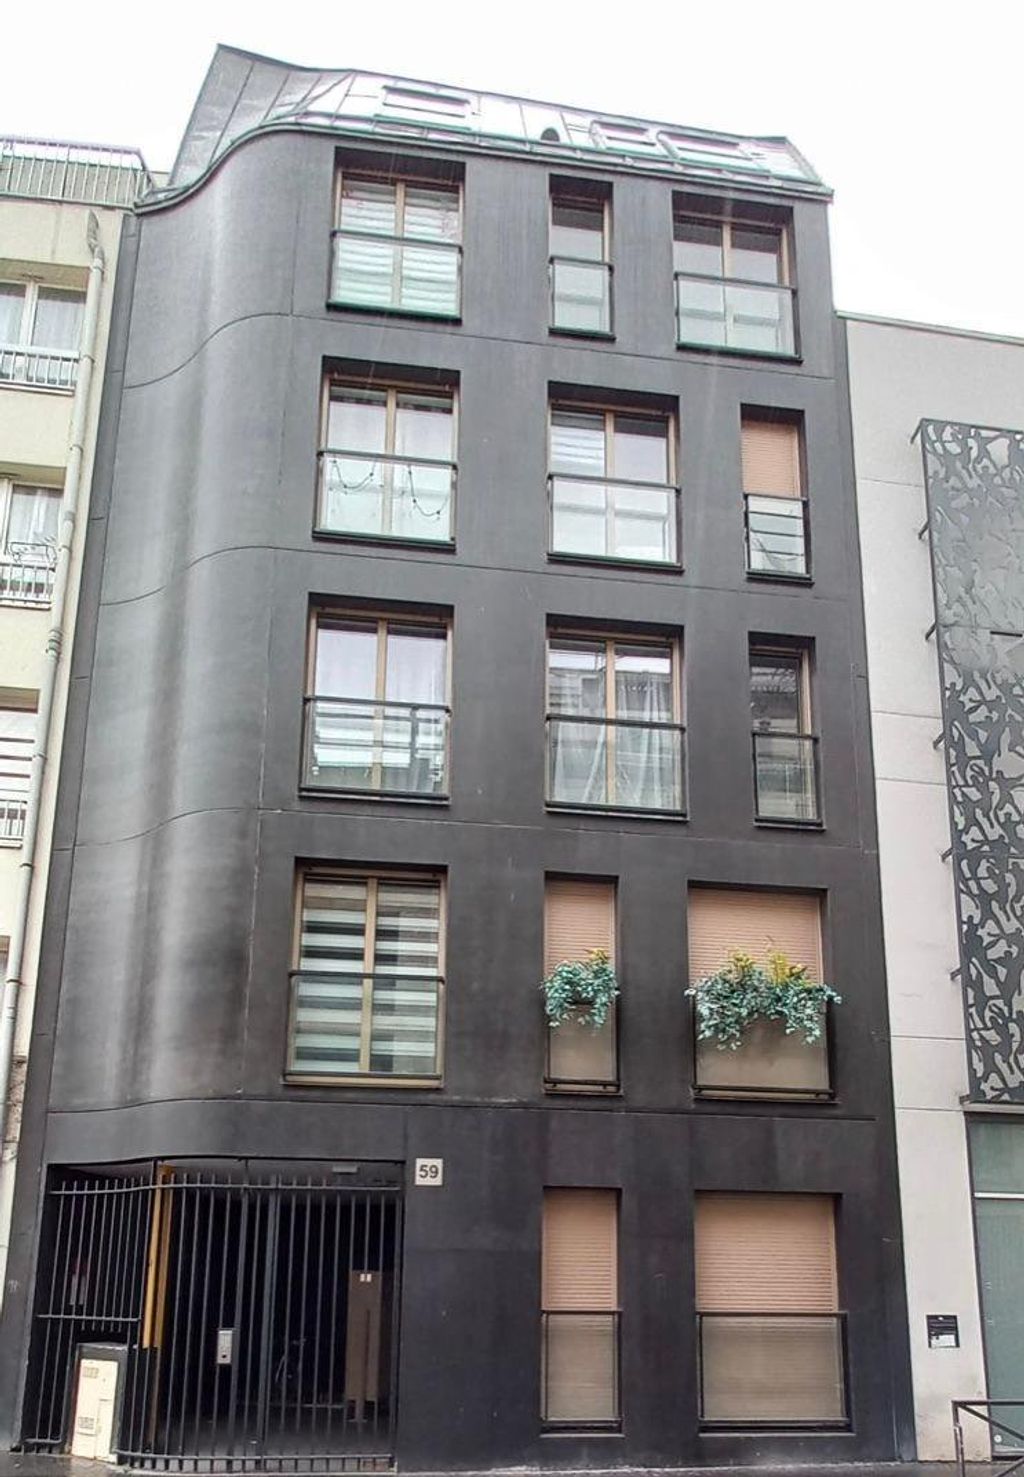 Achat studio à vendre 25 m² - Paris 20ème arrondissement